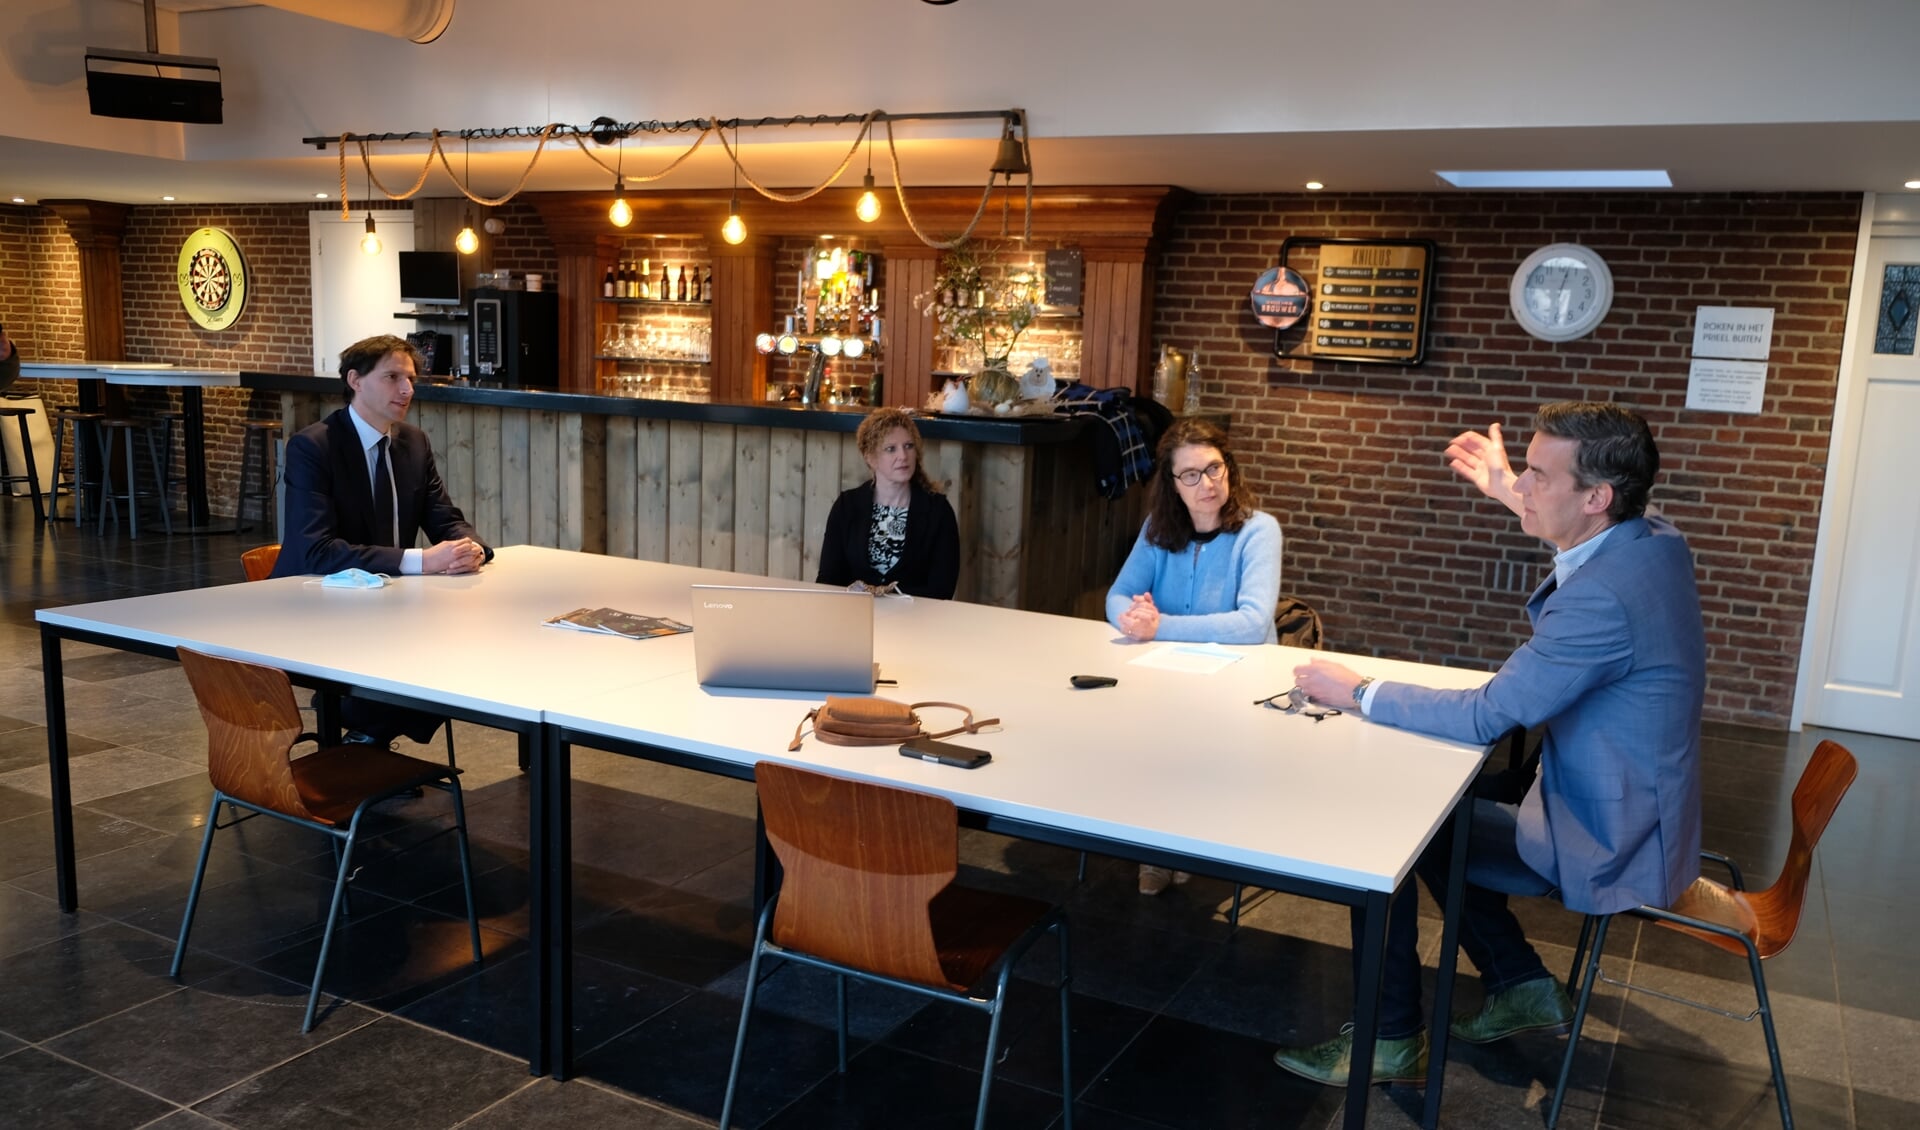 CDA-lijsttrekker Wopke Hoekstra laat zich bijpraten door Ivonne van de Horst (blauwe trui) en Maarten Ebben over lokale initiatieven in het Land van Cuijk.